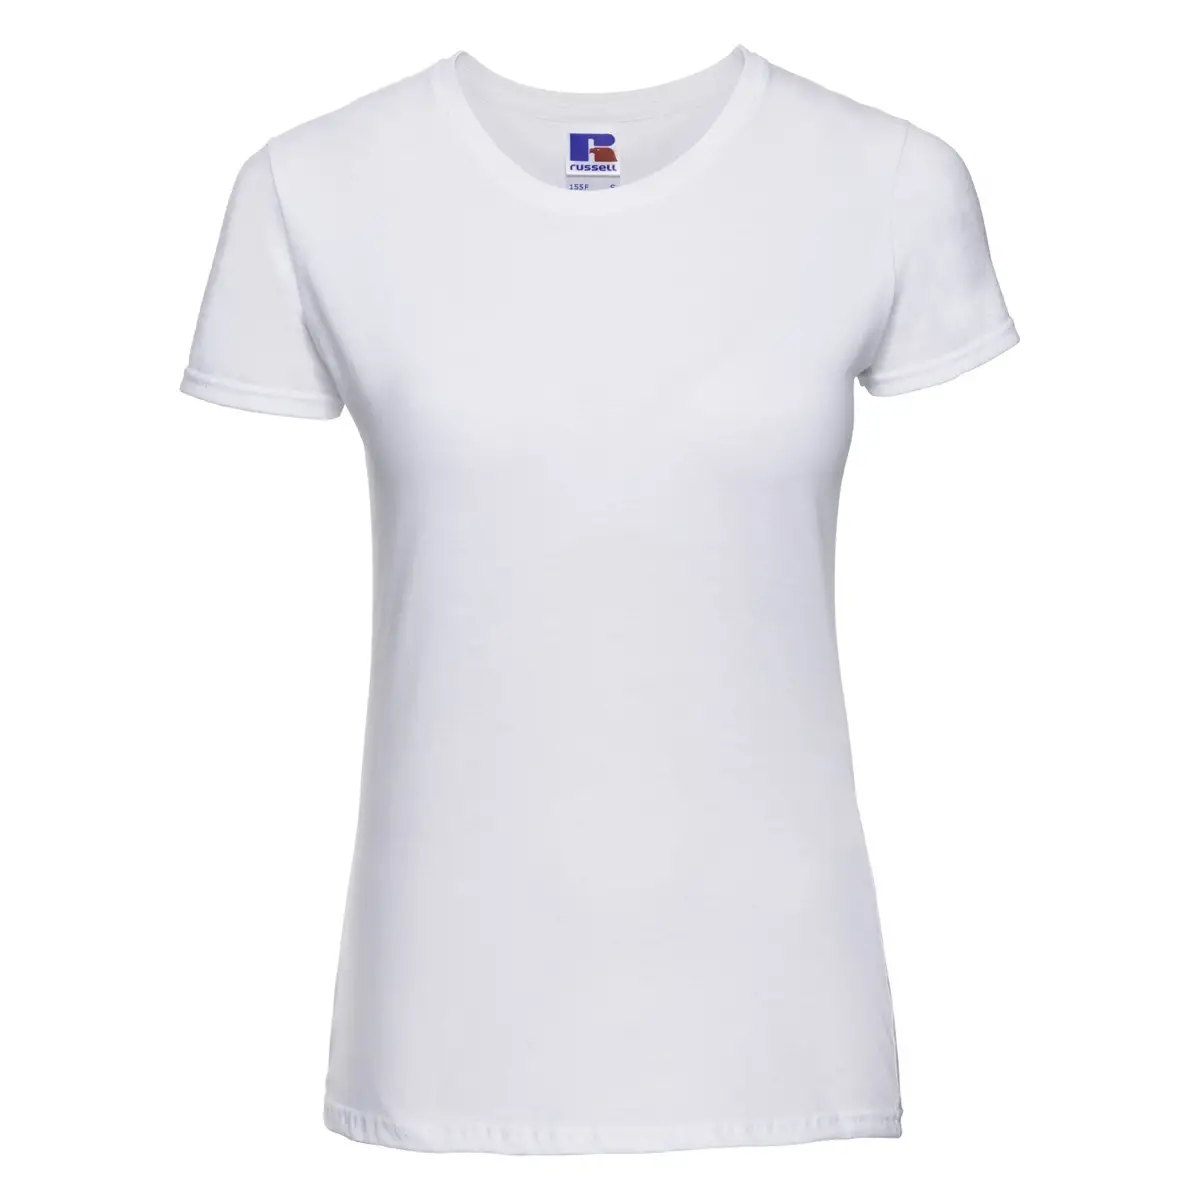 T-Shirt Manica Corta Donna Cotone Personalizzata - Russell Europe